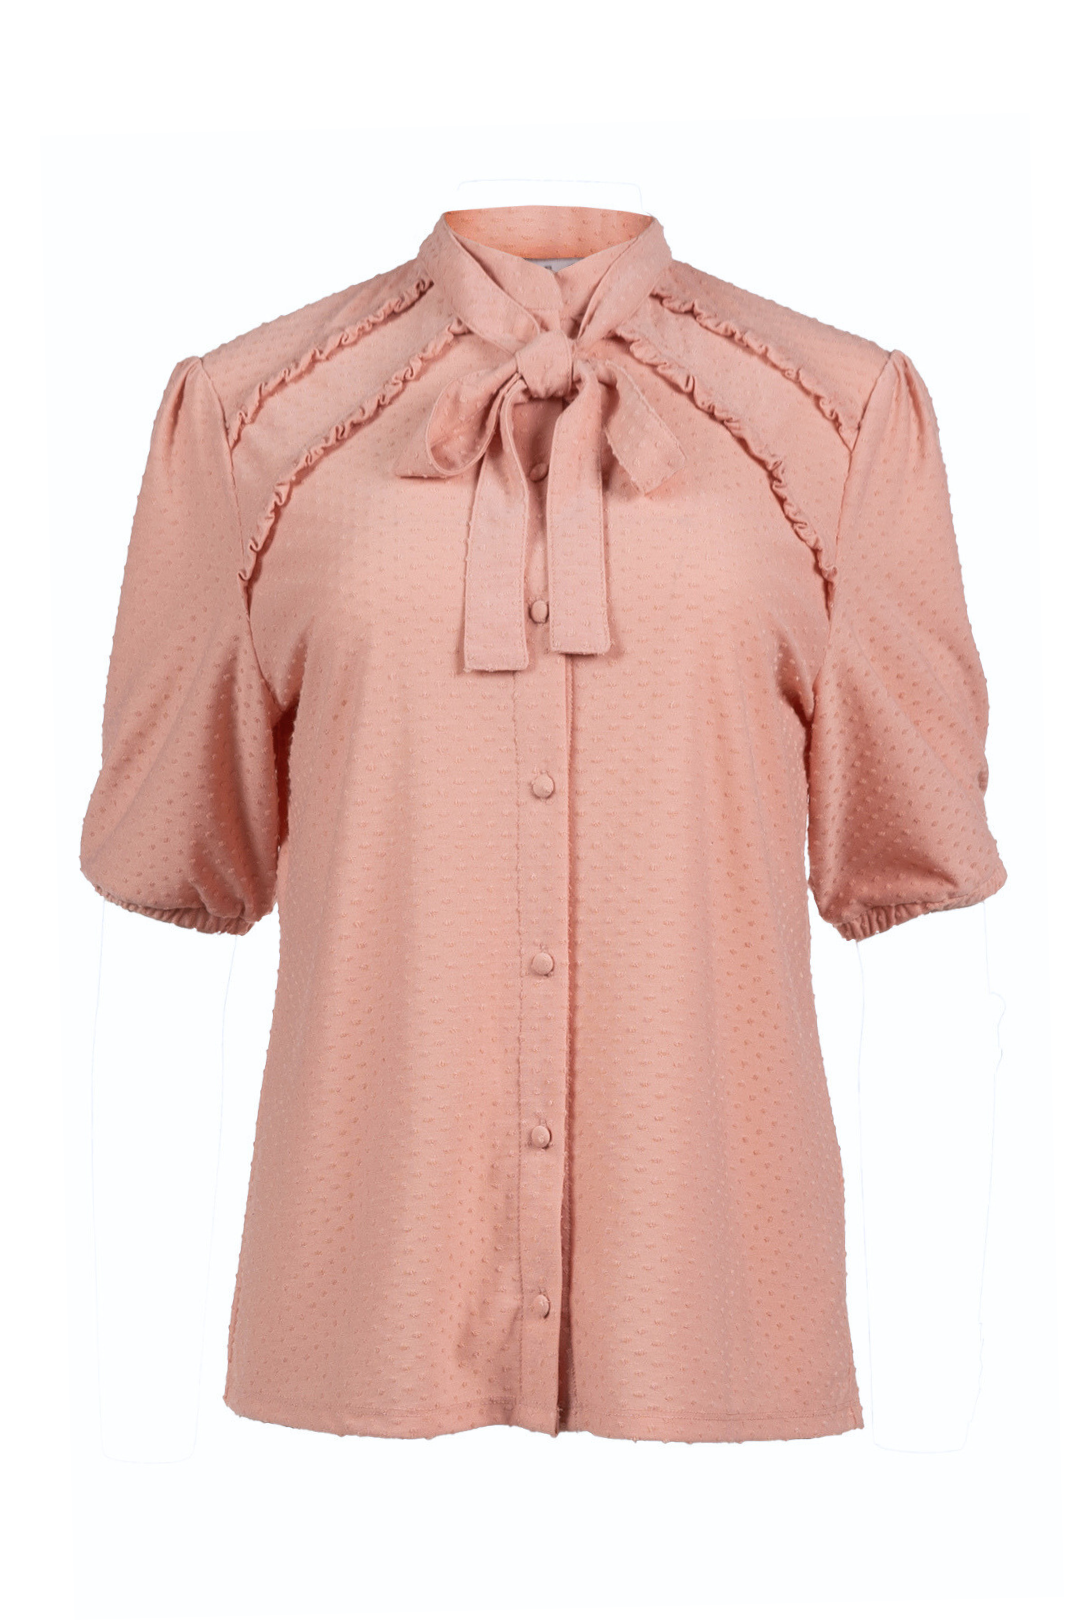 Chemise rose texturée à manches courtes | Soho